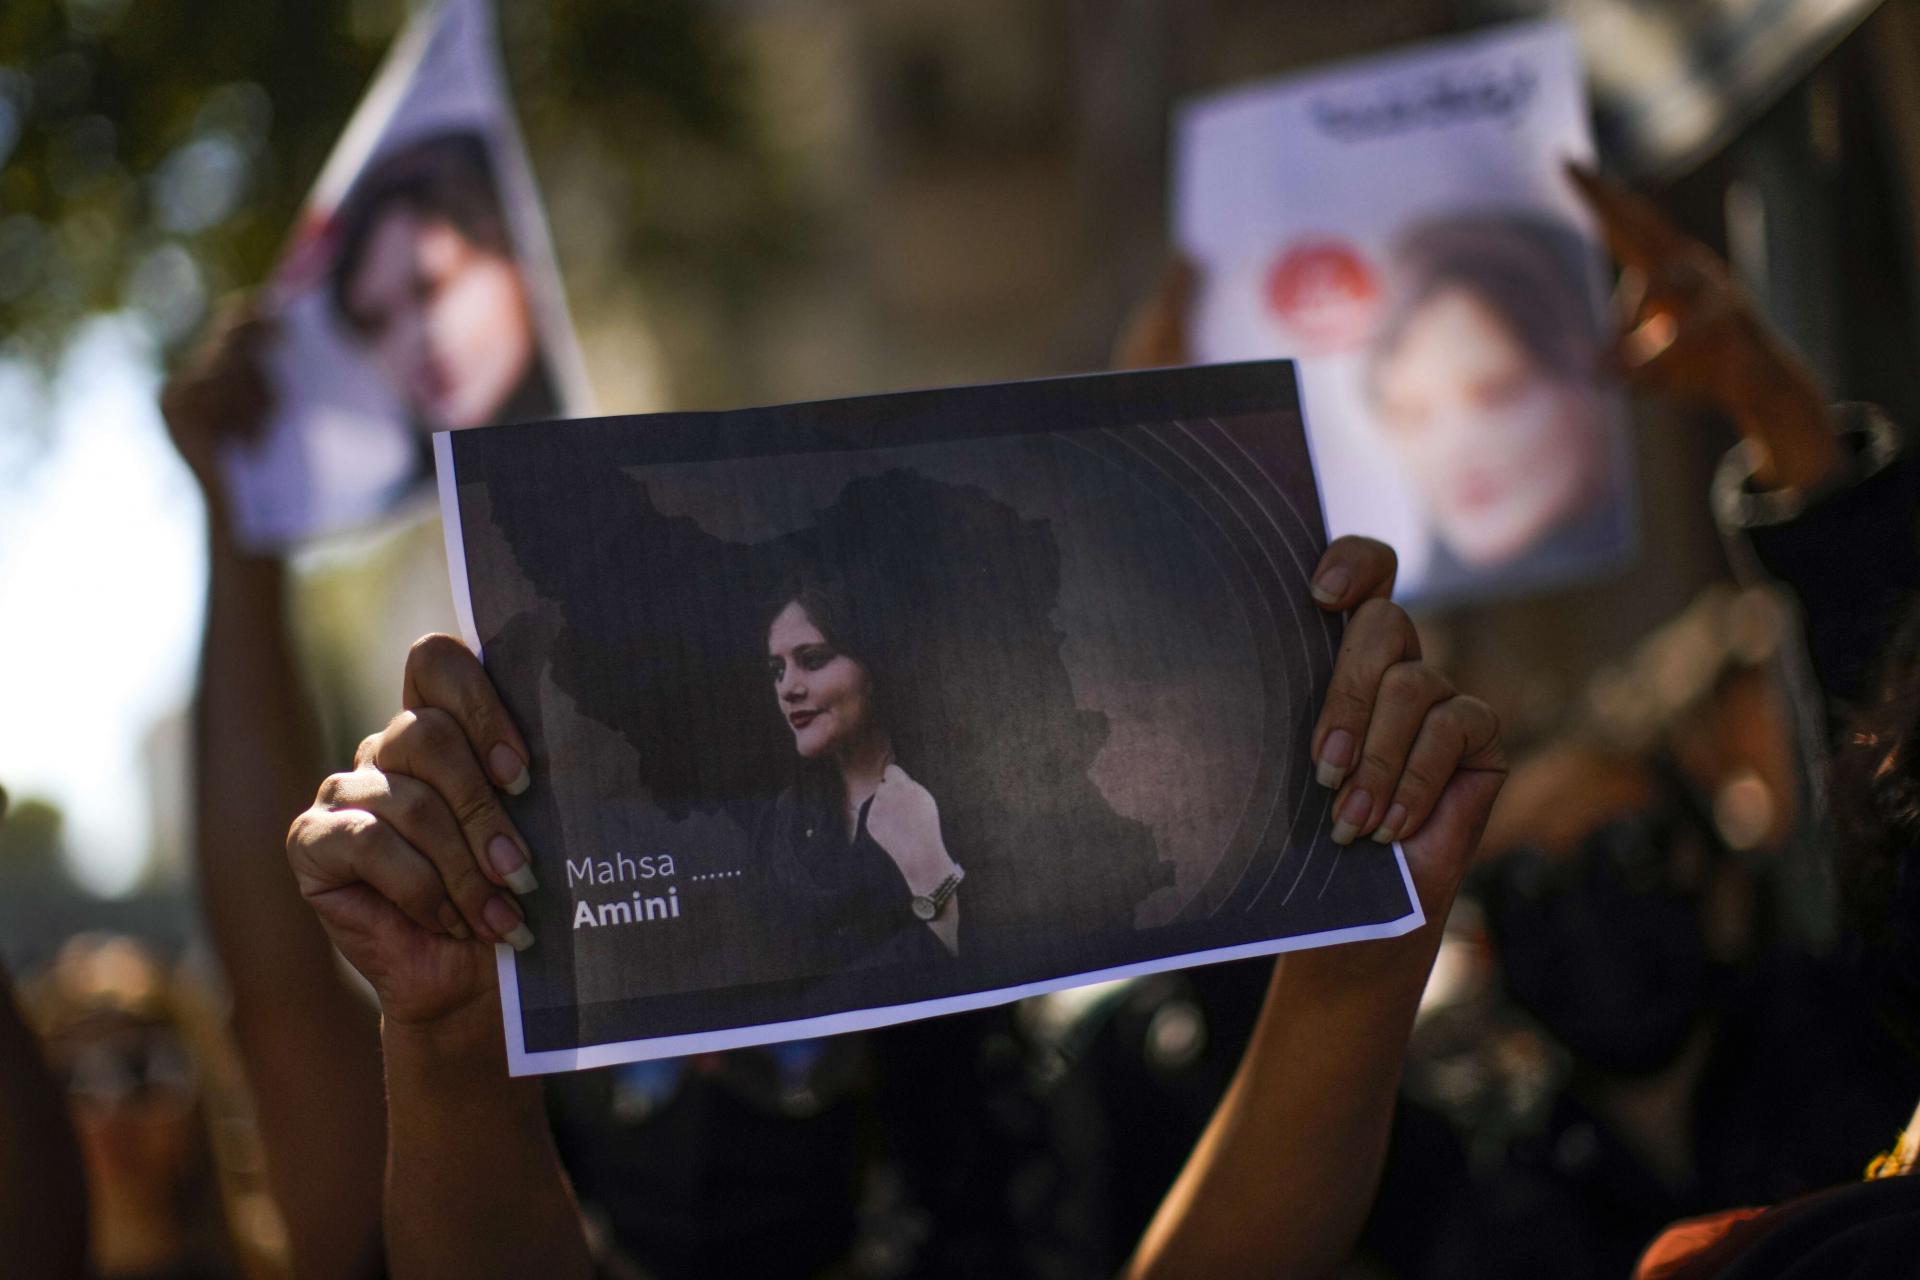 الخميس أوقِفت إيران صحافية غطت جنازة أميني